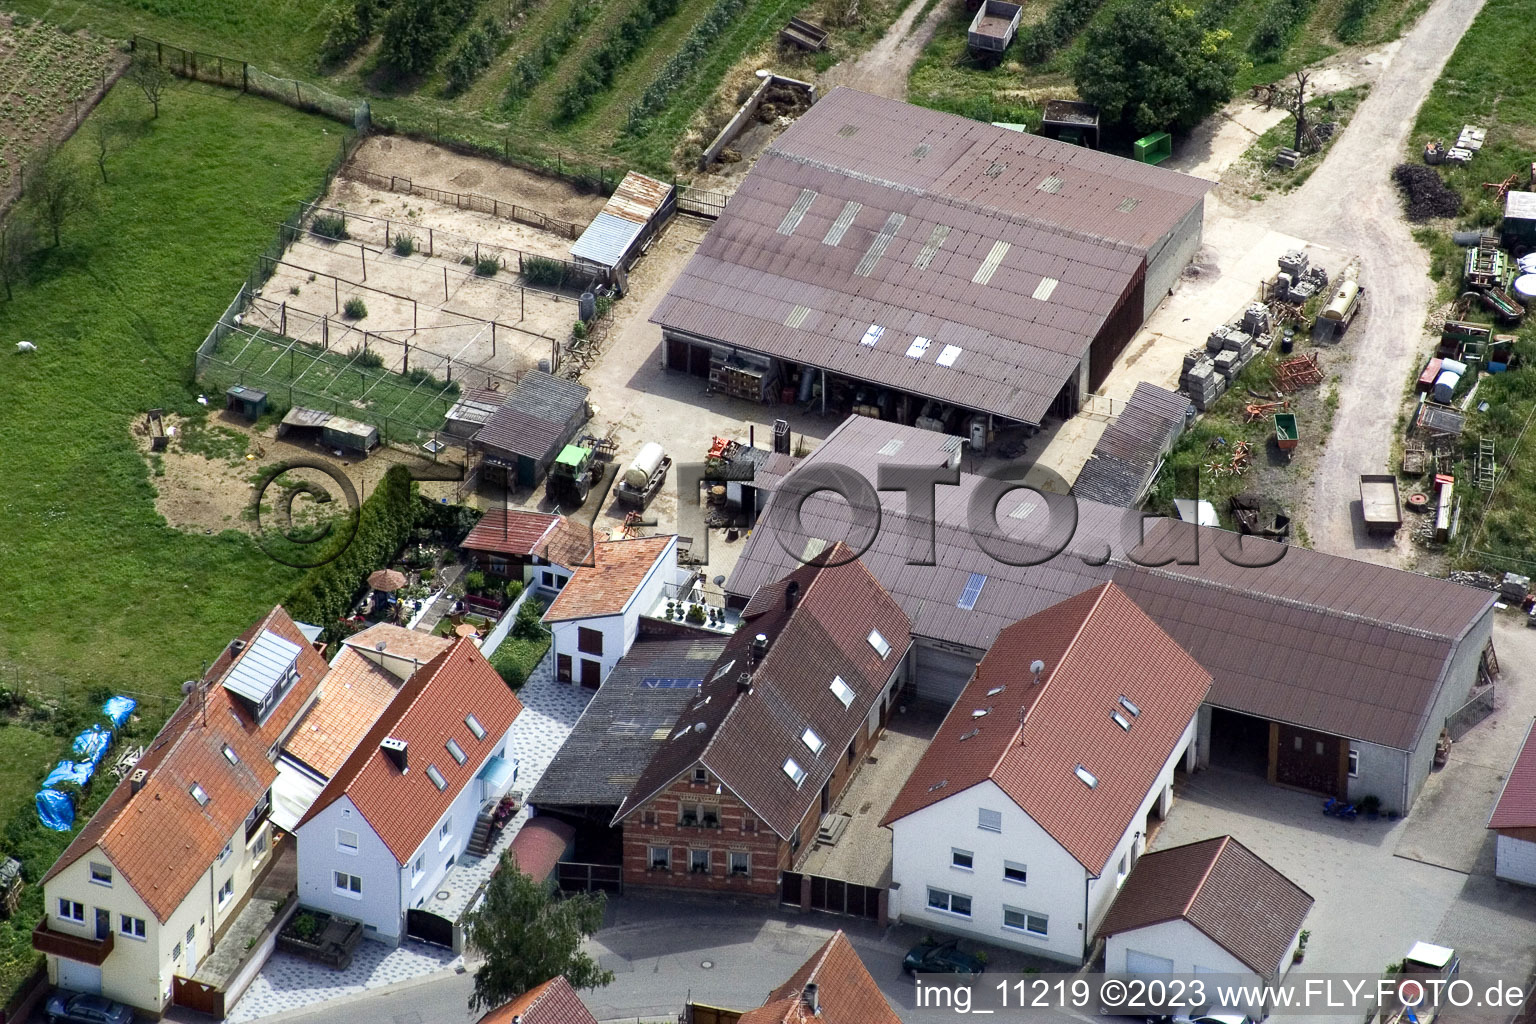 Ortsteil Mühlhofen in Billigheim-Ingenheim im Bundesland Rheinland-Pfalz, Deutschland aus der Luft betrachtet